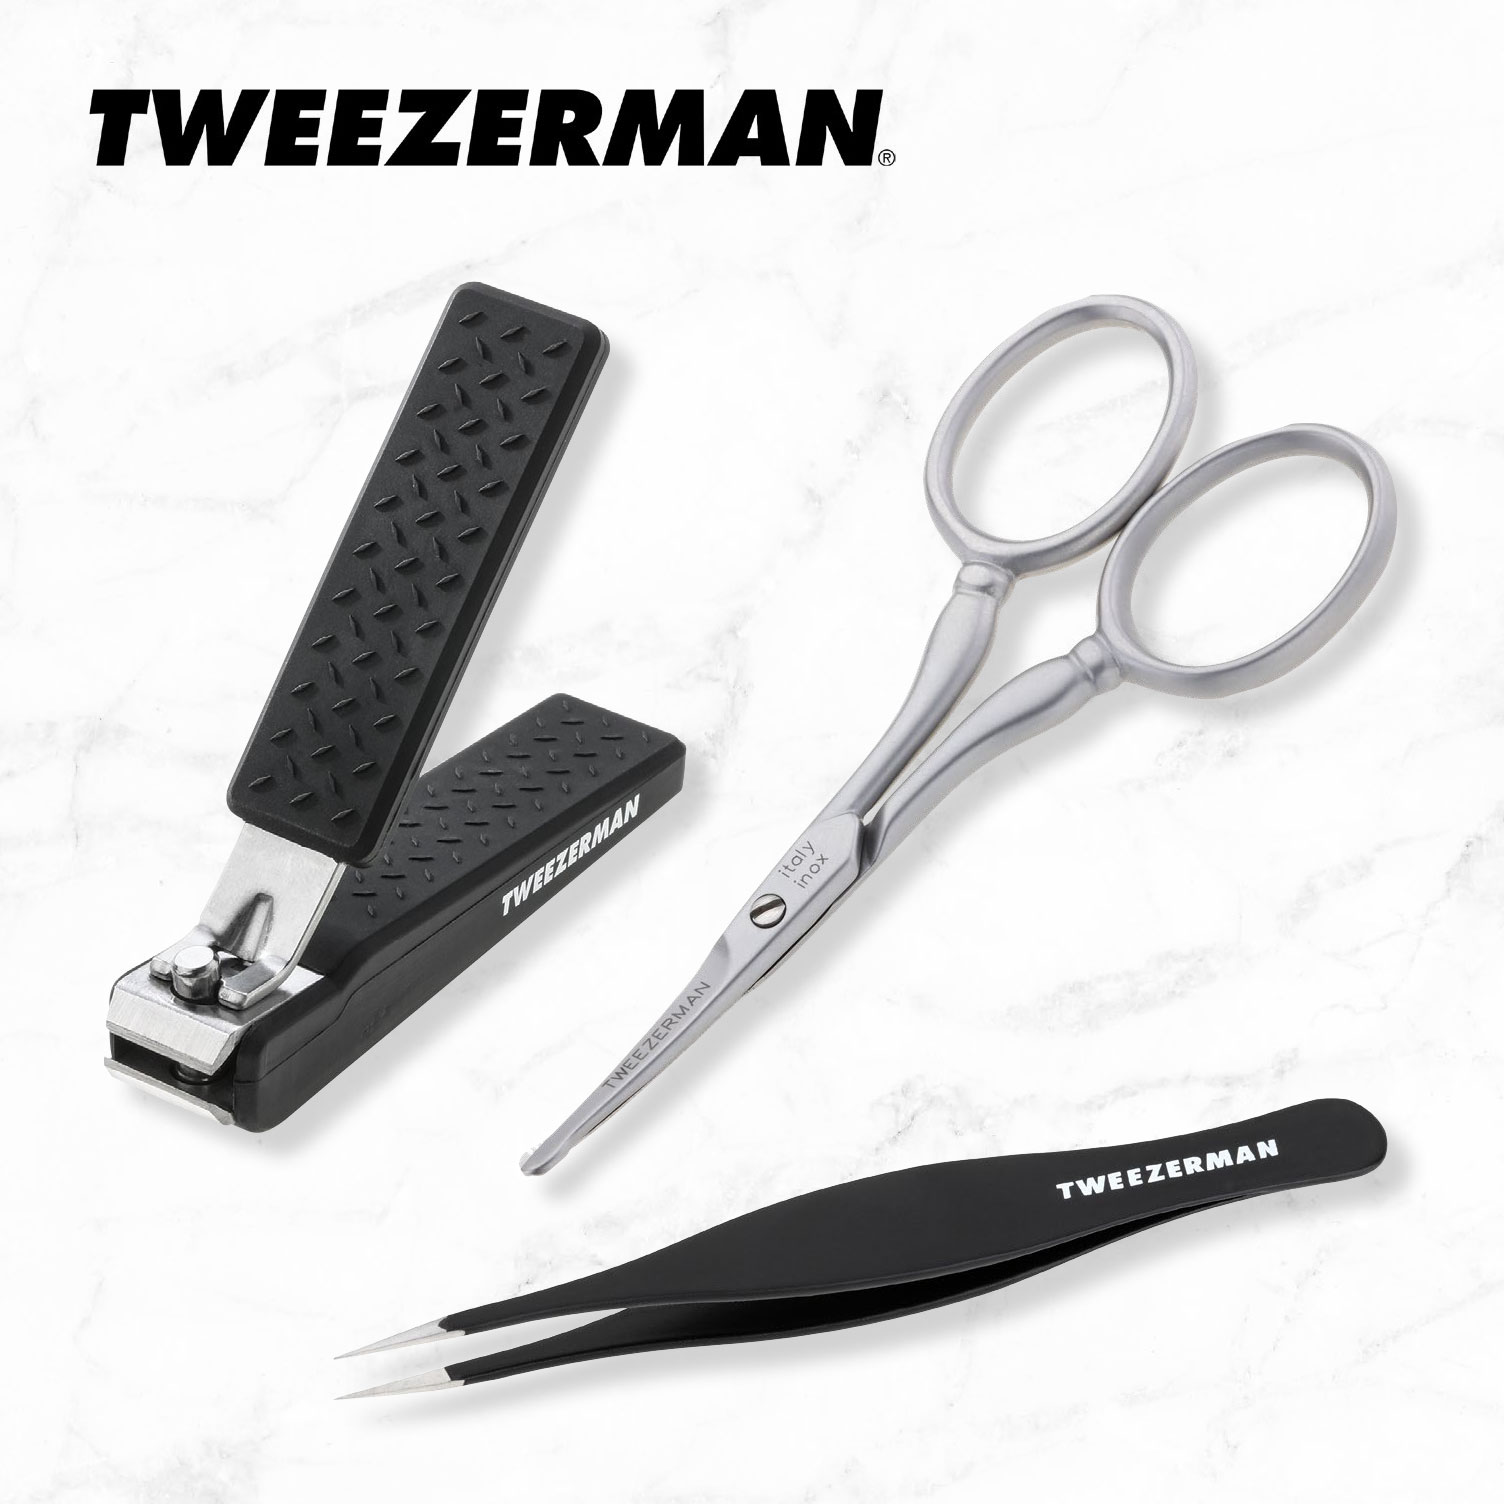 Tweezerman tools